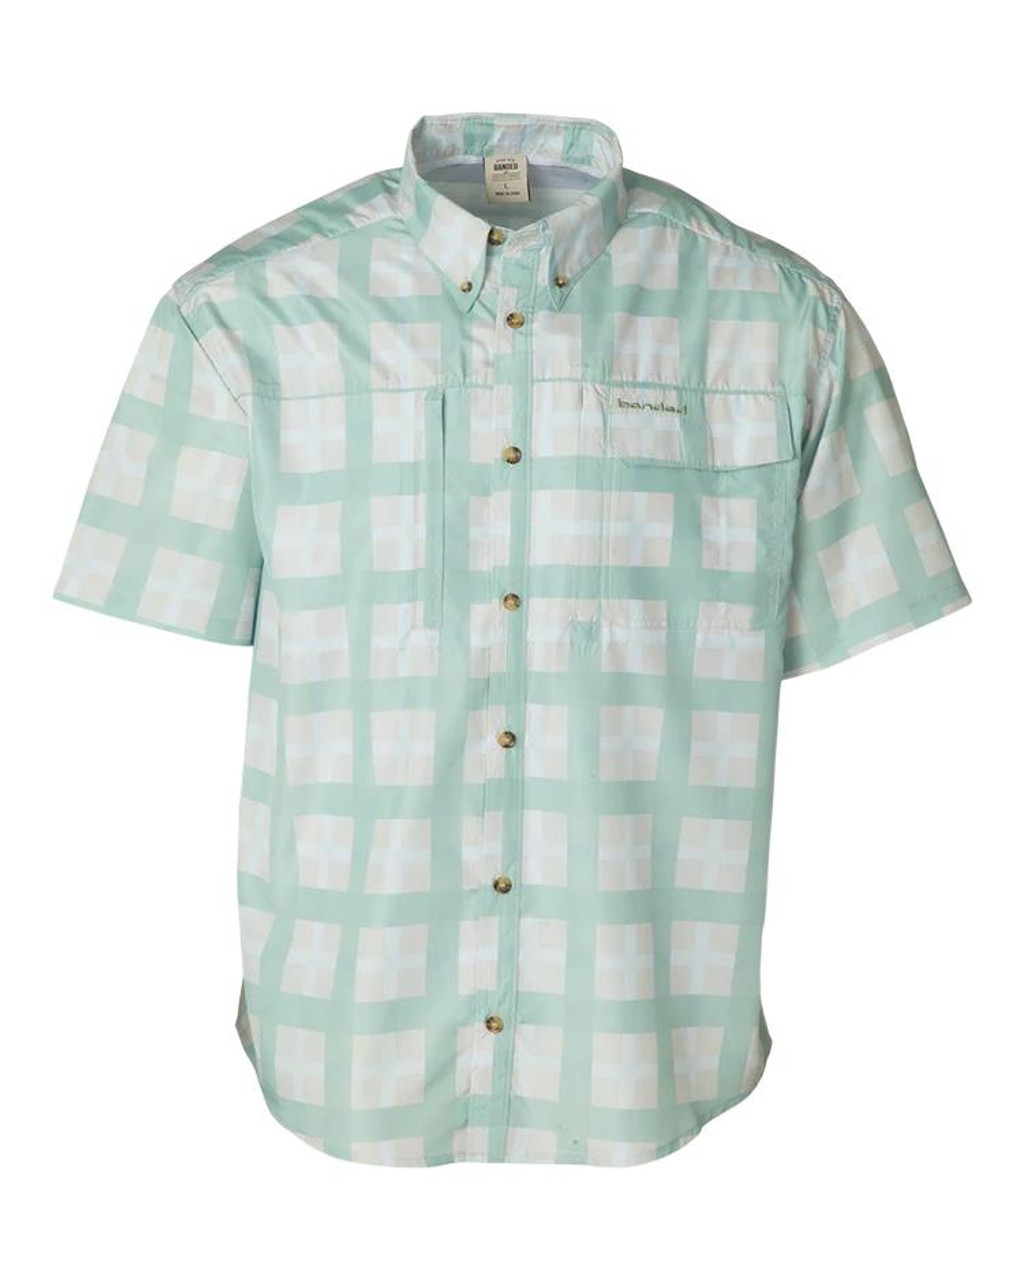 Banded Accelerator OTL Plaid Fishing Shirt - Short Sleeve - Light Green -  Dance's Sporting Goods